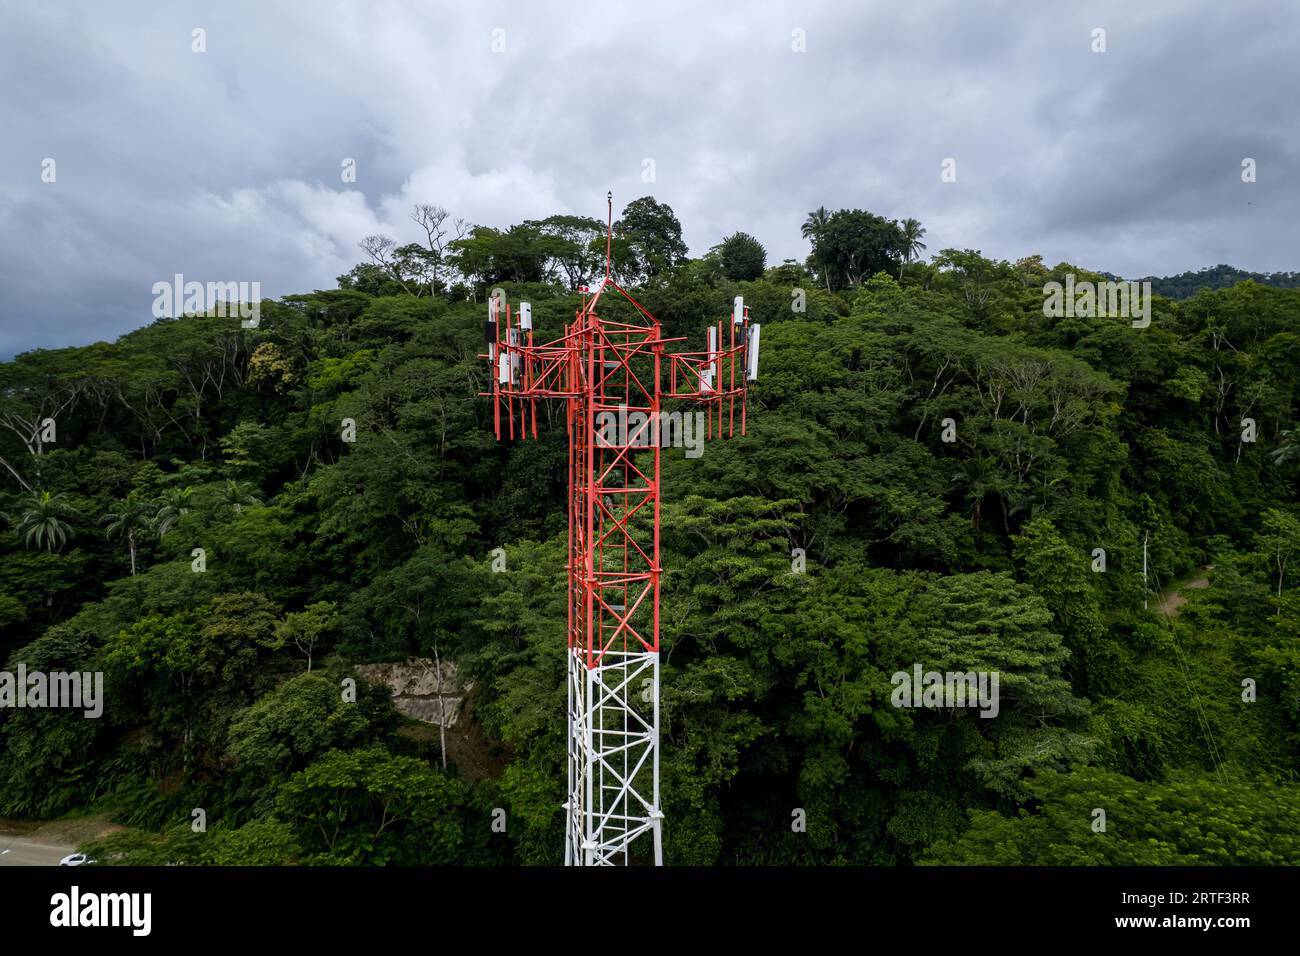 Nahaufnahme von Luftaufnahmen eines Mobilfunk-, Telekommunikations- und g5-Turms in den Bergen und am Strand von Costa Rica Stockfoto